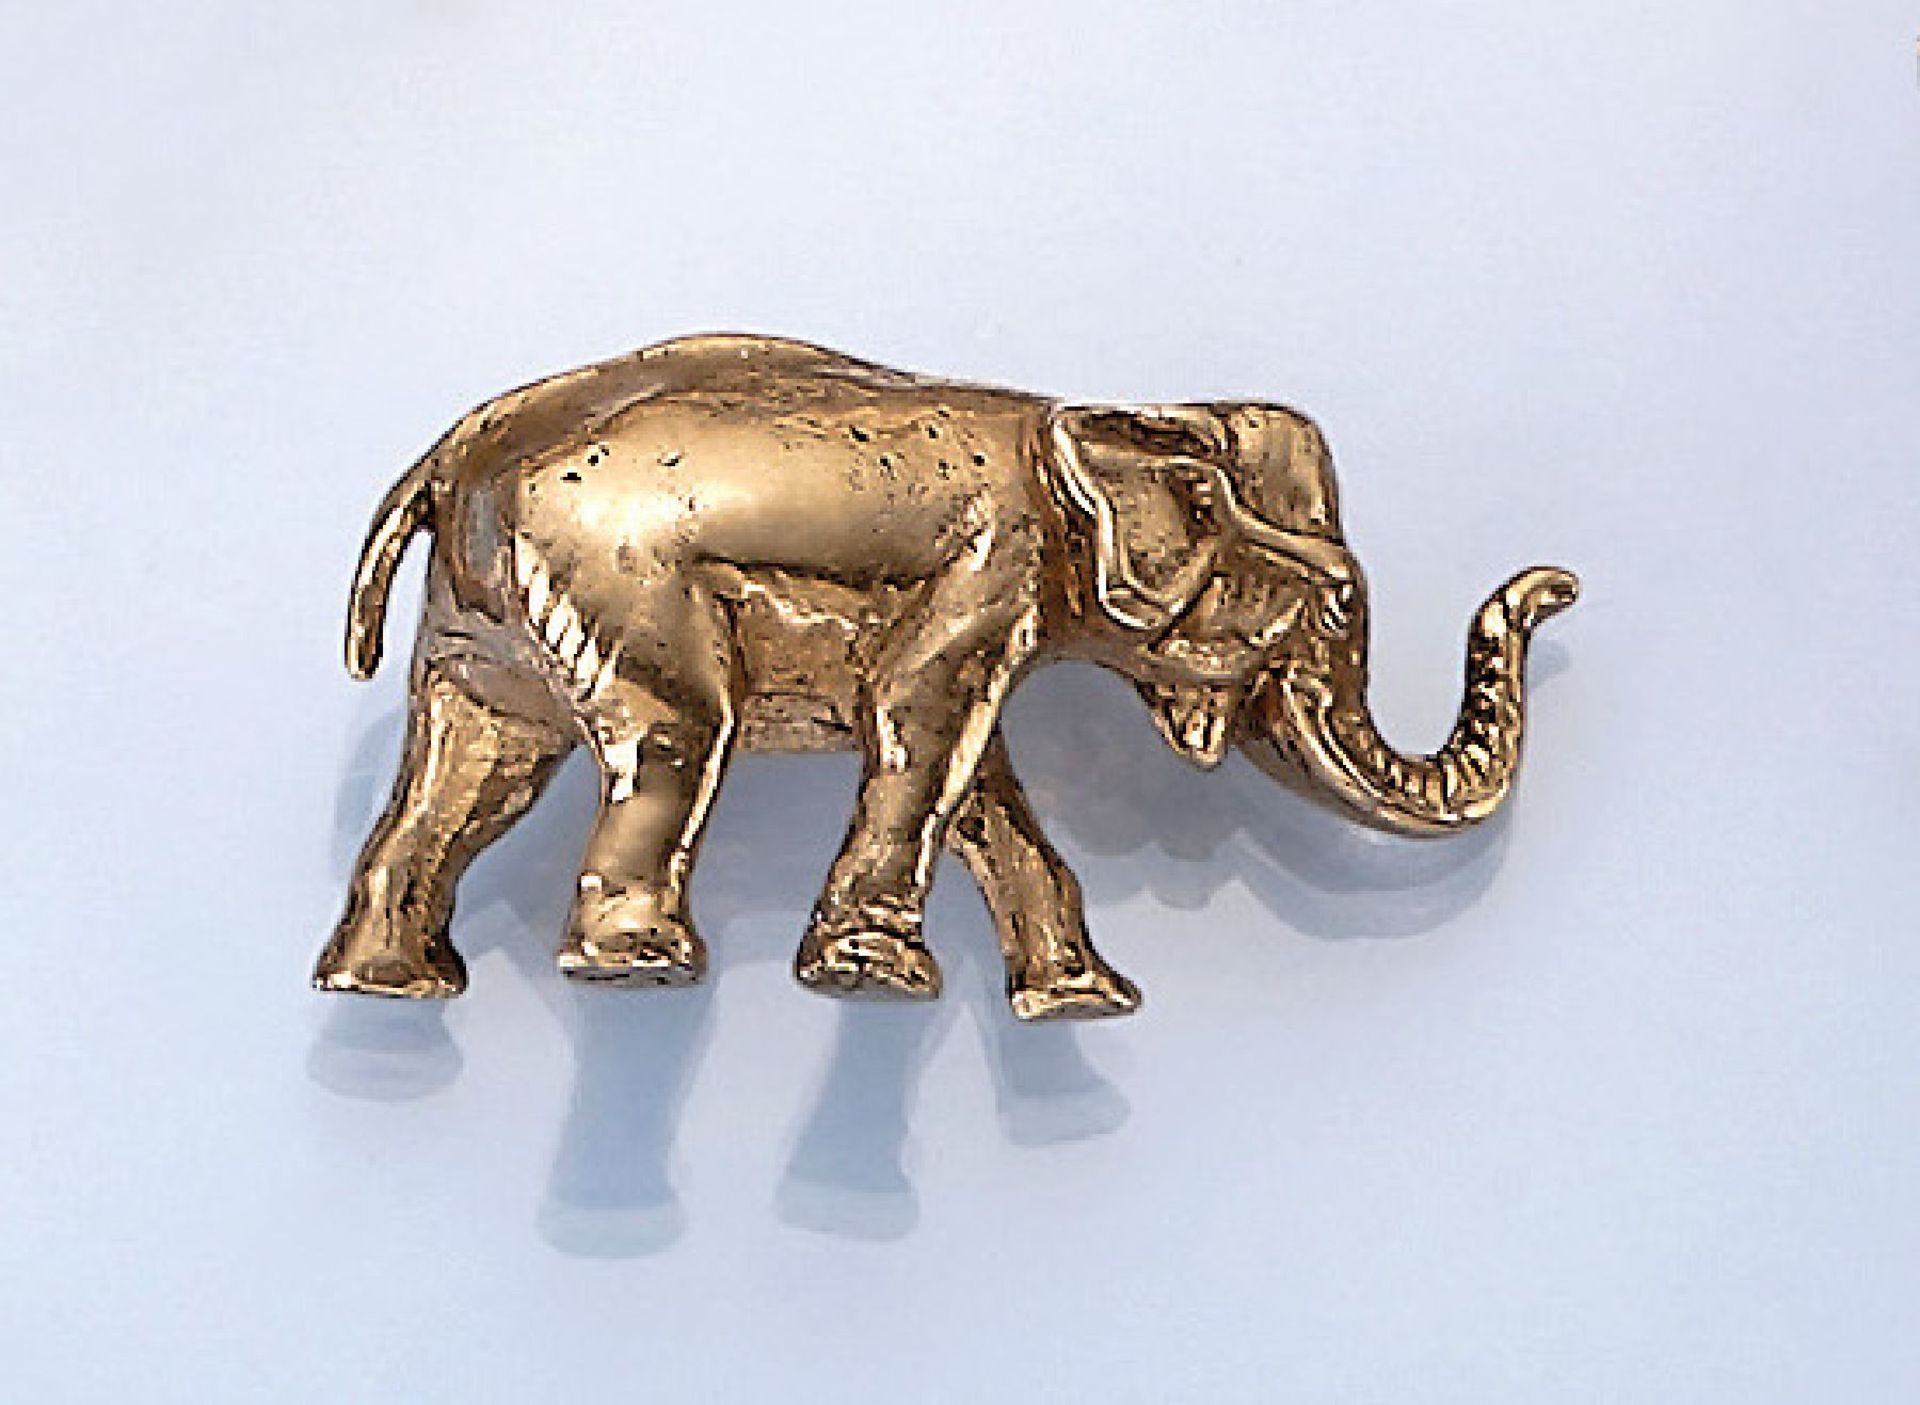 21.6 kt Goldskulptur "Elefant", ca. 22.8 g, GG 900/000, naturalistische Darstellung, pol.21.6 kt